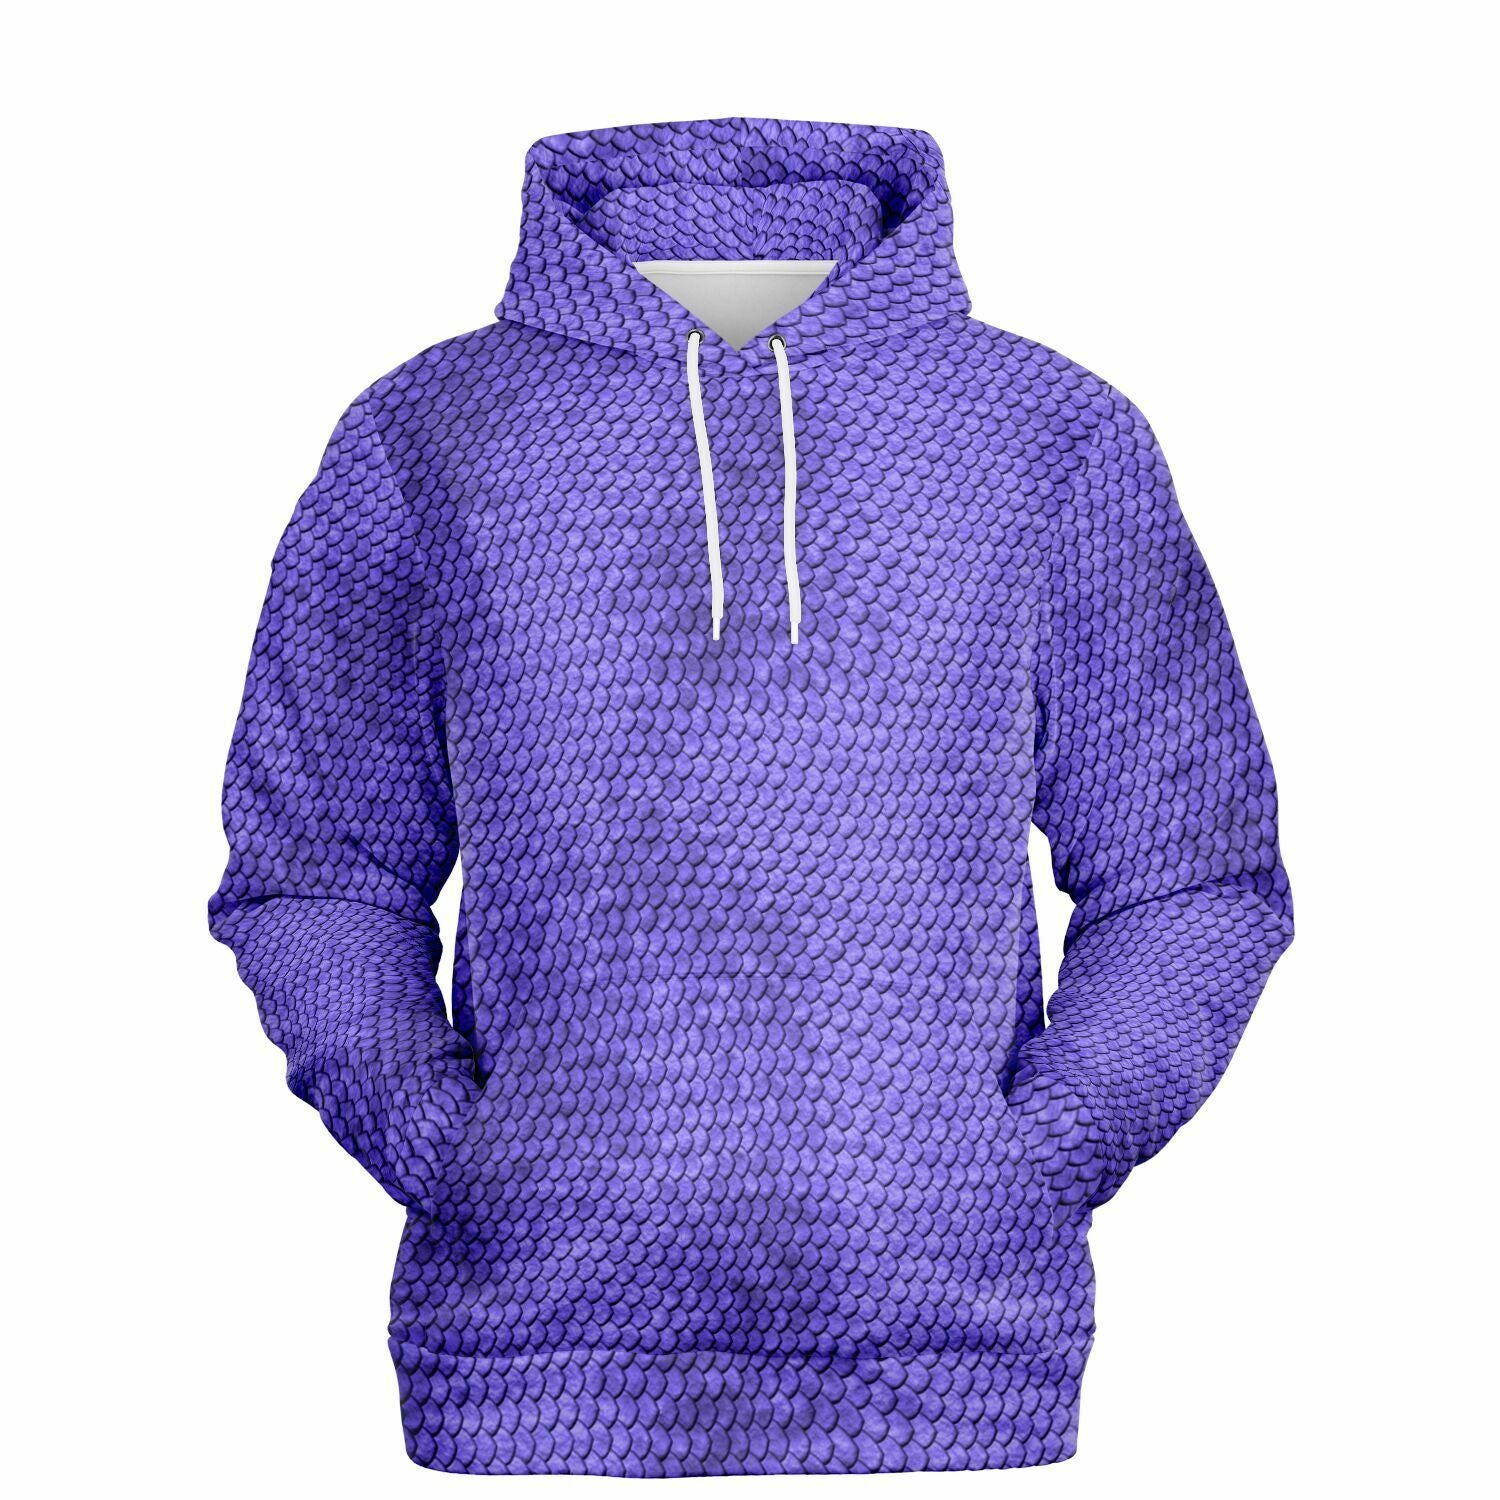 Purple hoodie with snakeskin print